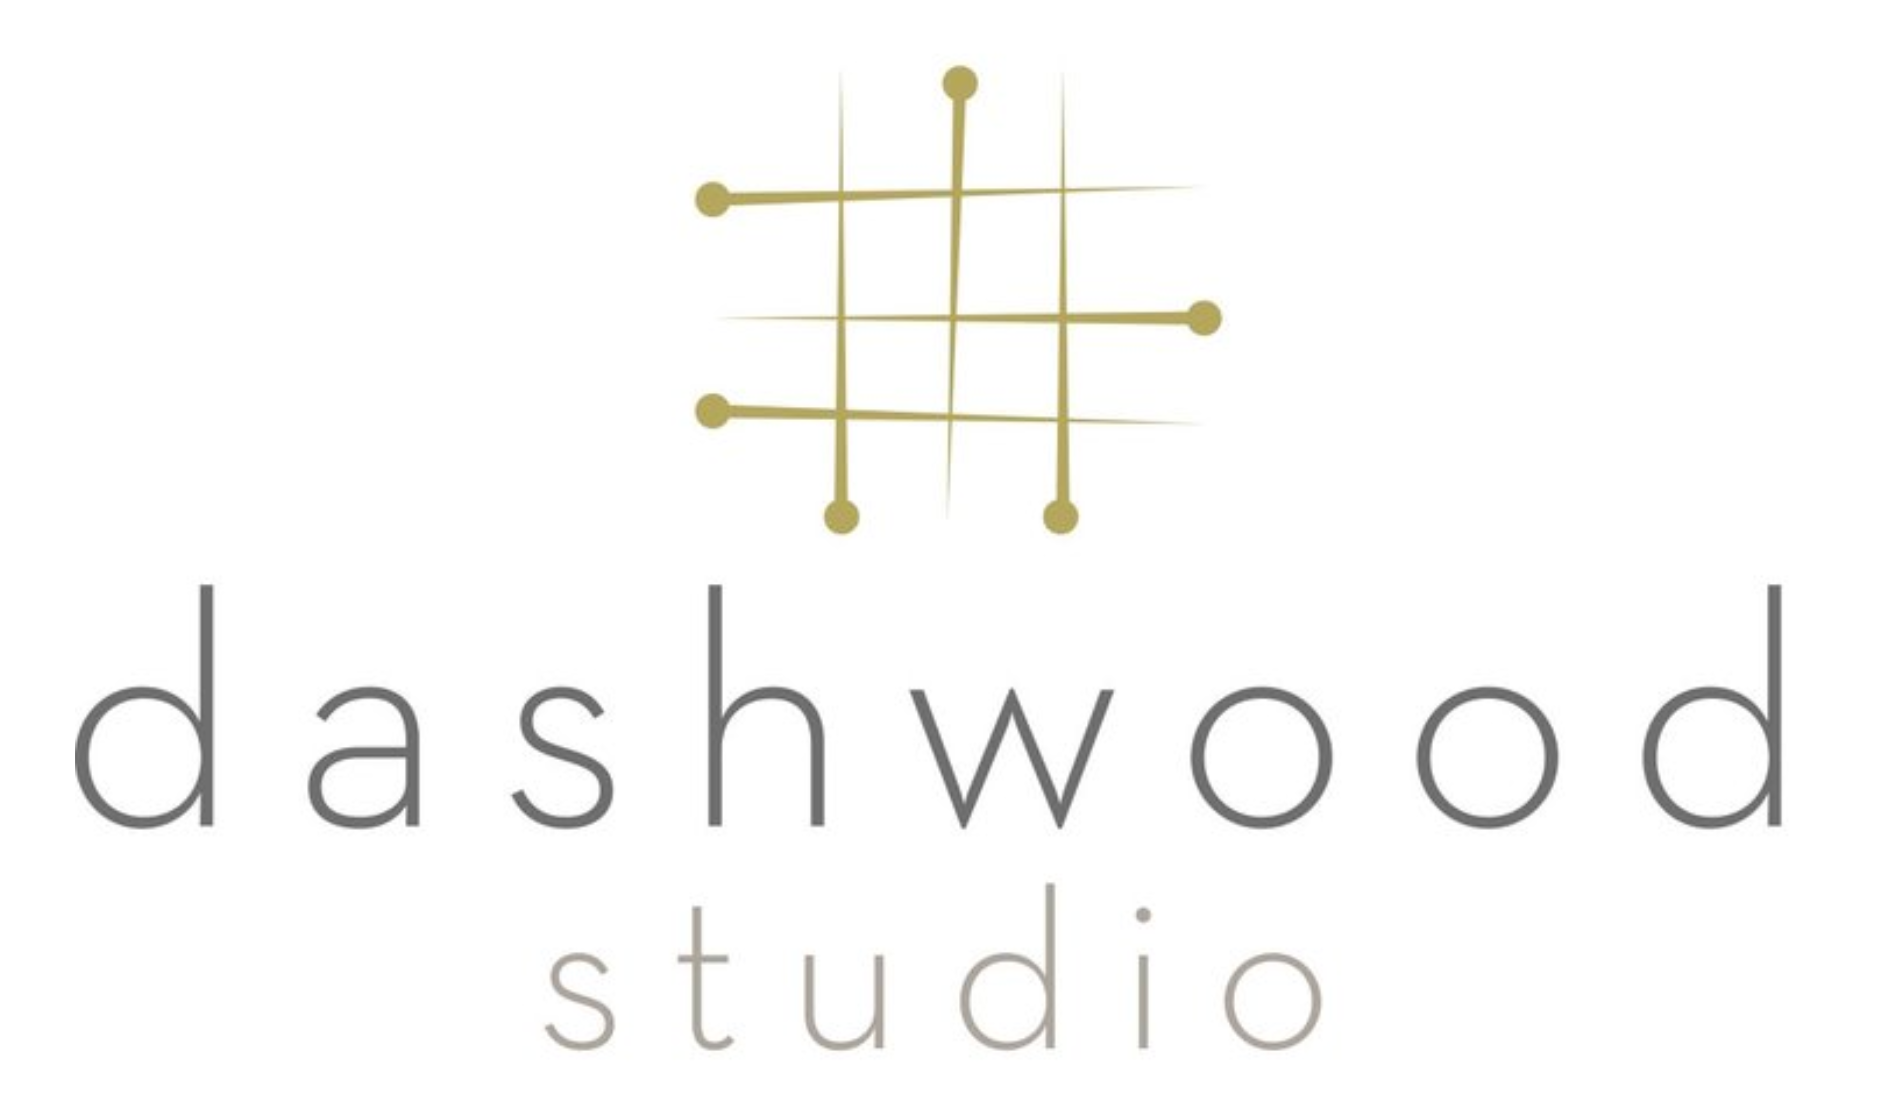 Buy Dashwood Studio quilting fabric at The Fabric Fox